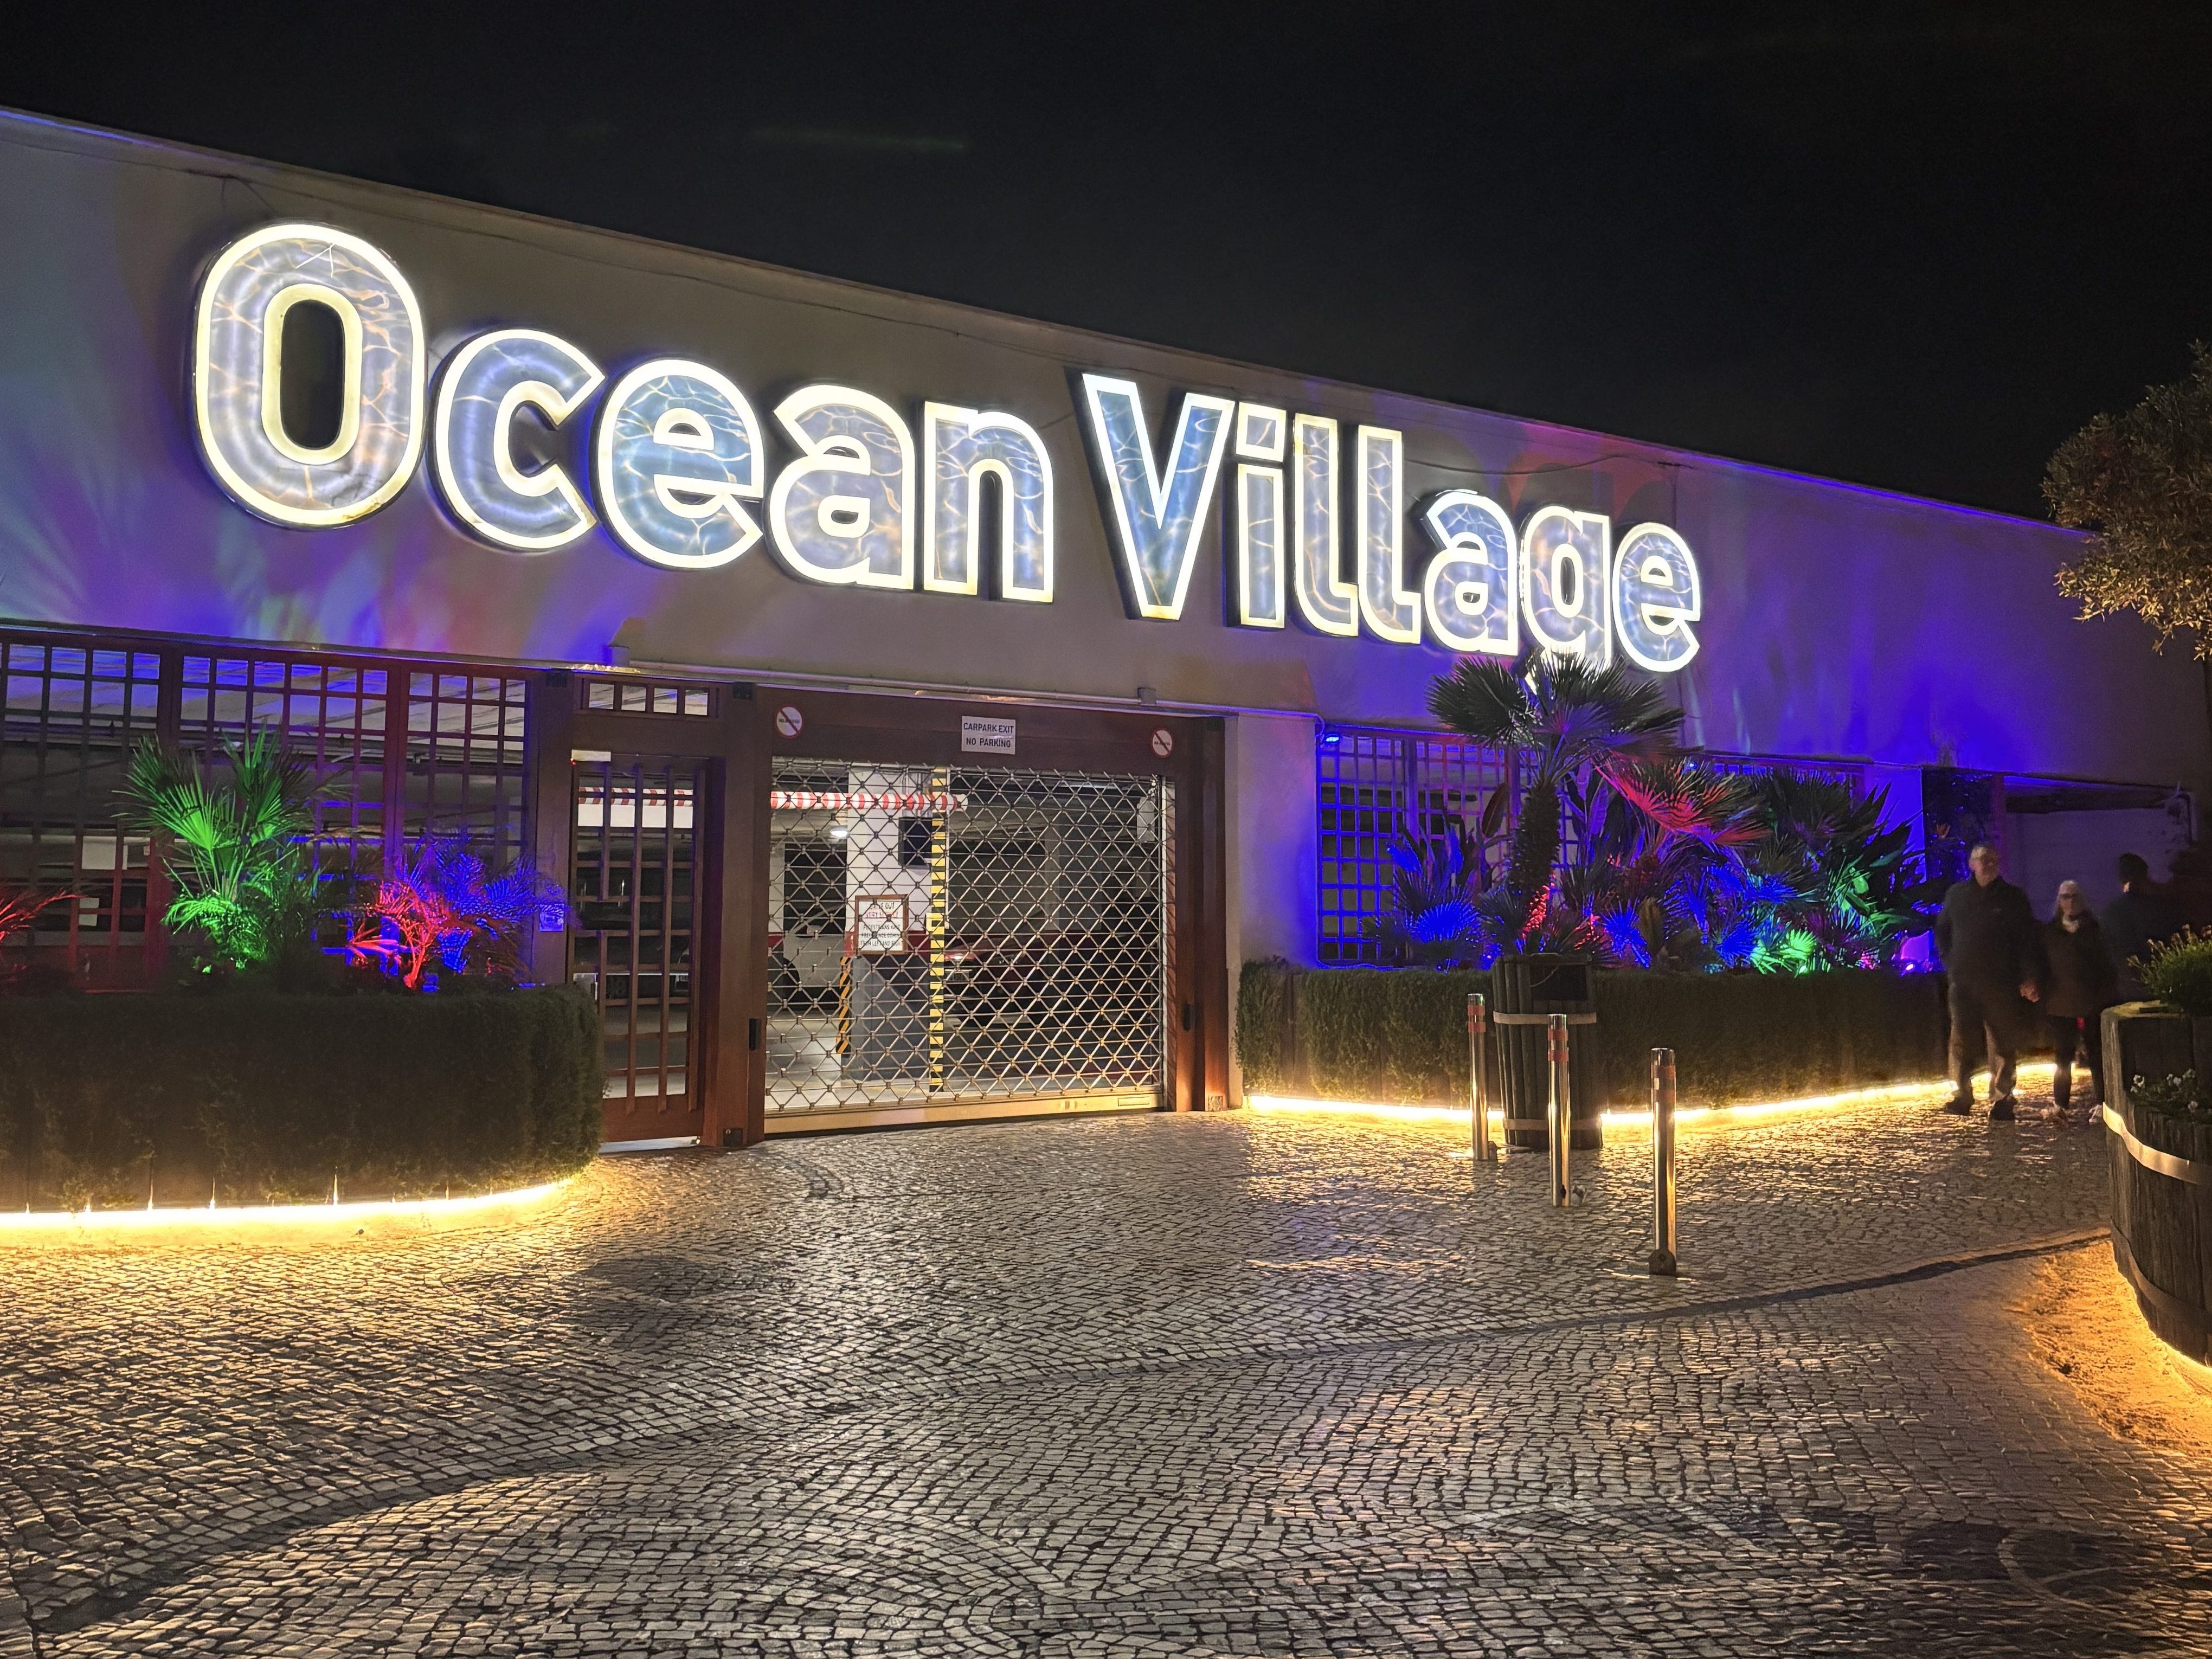 Ocean Village Gibraltar Traveltomuse.com